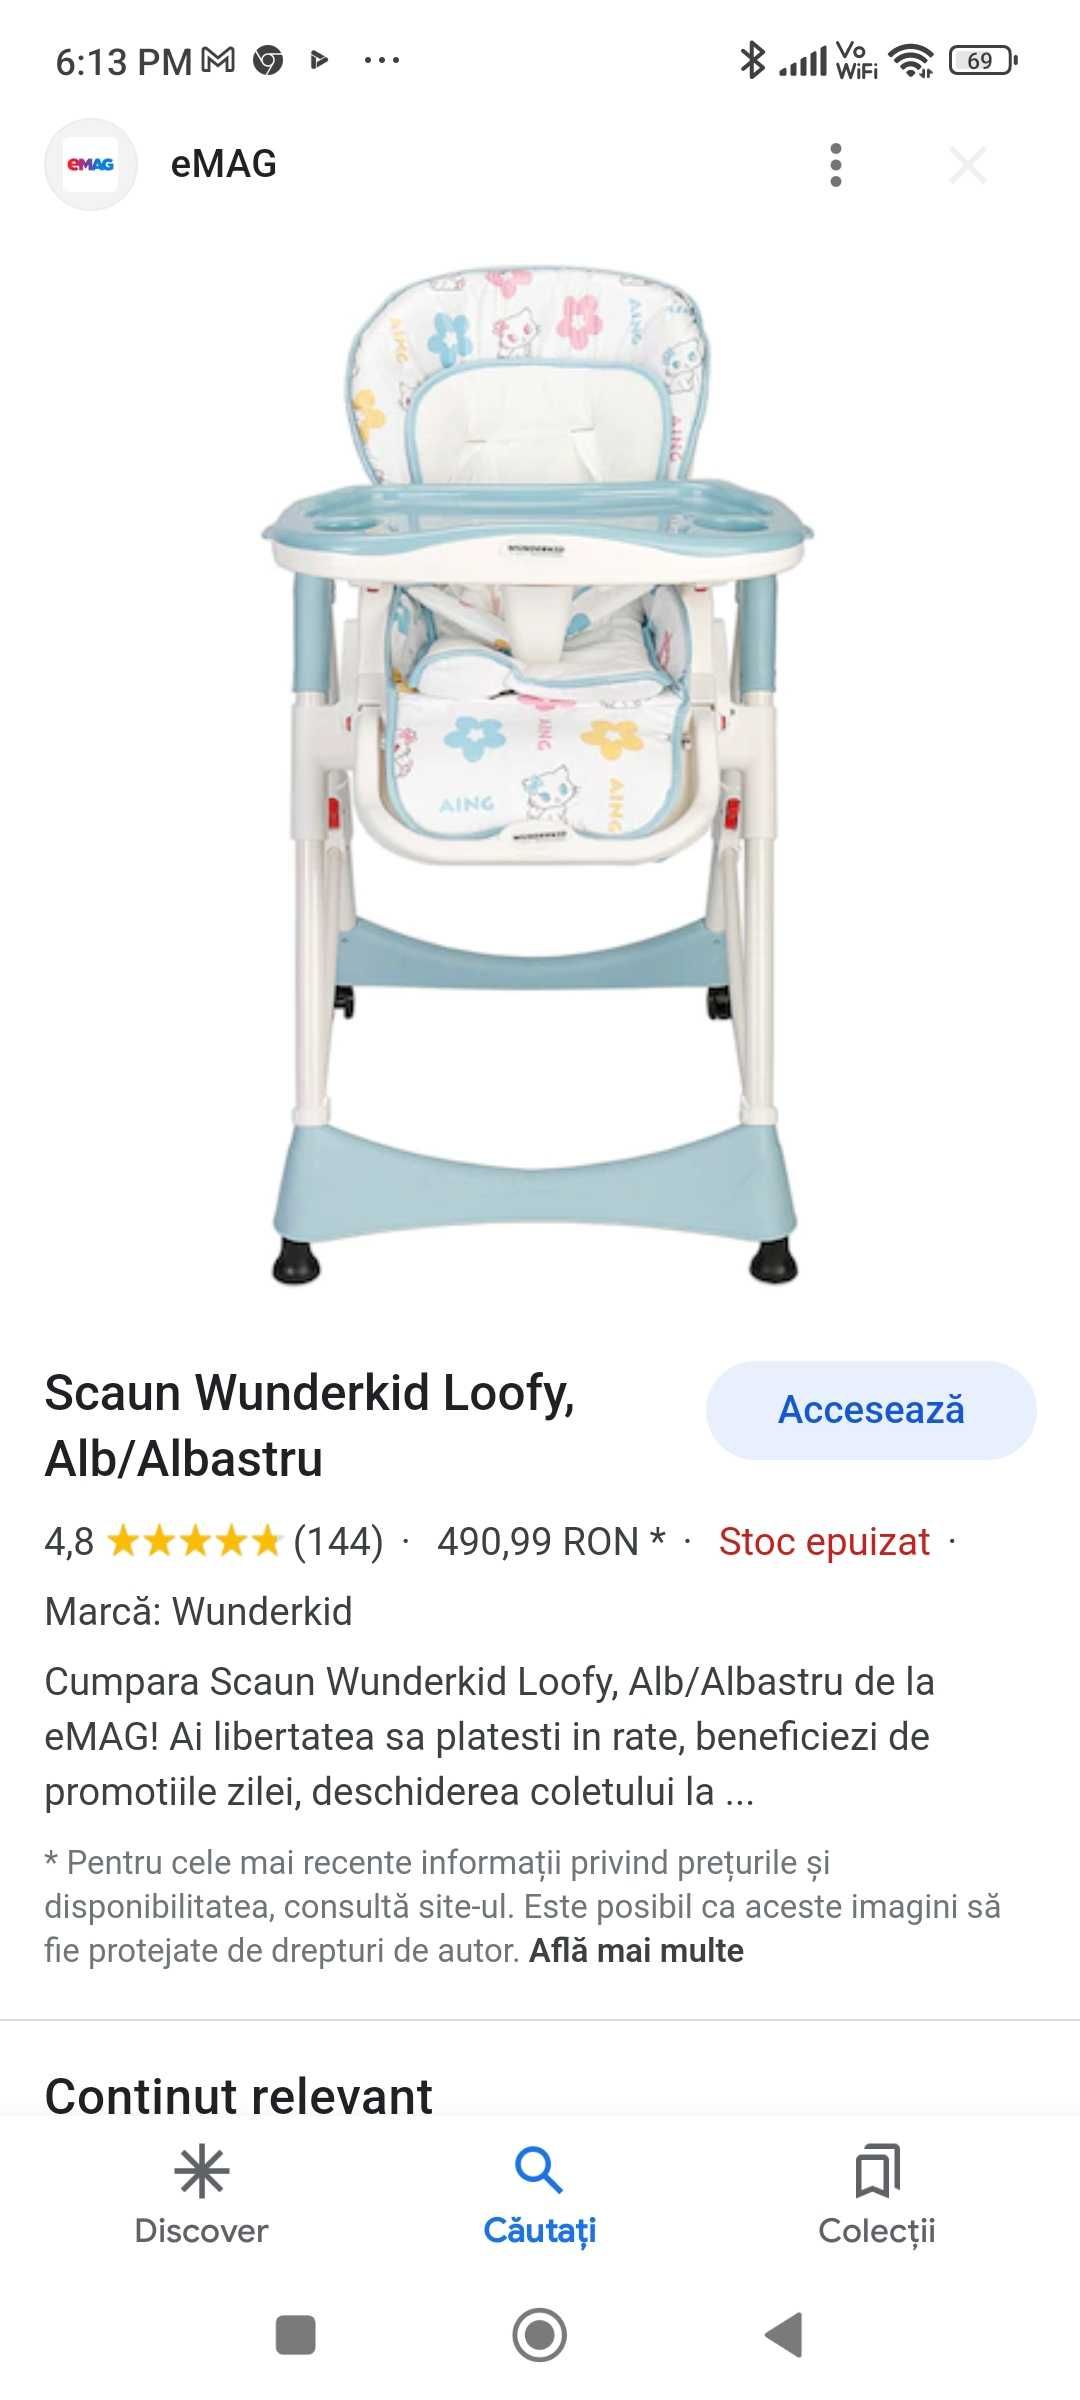 Scaun de masa Wunderkid Loofy pentru copii